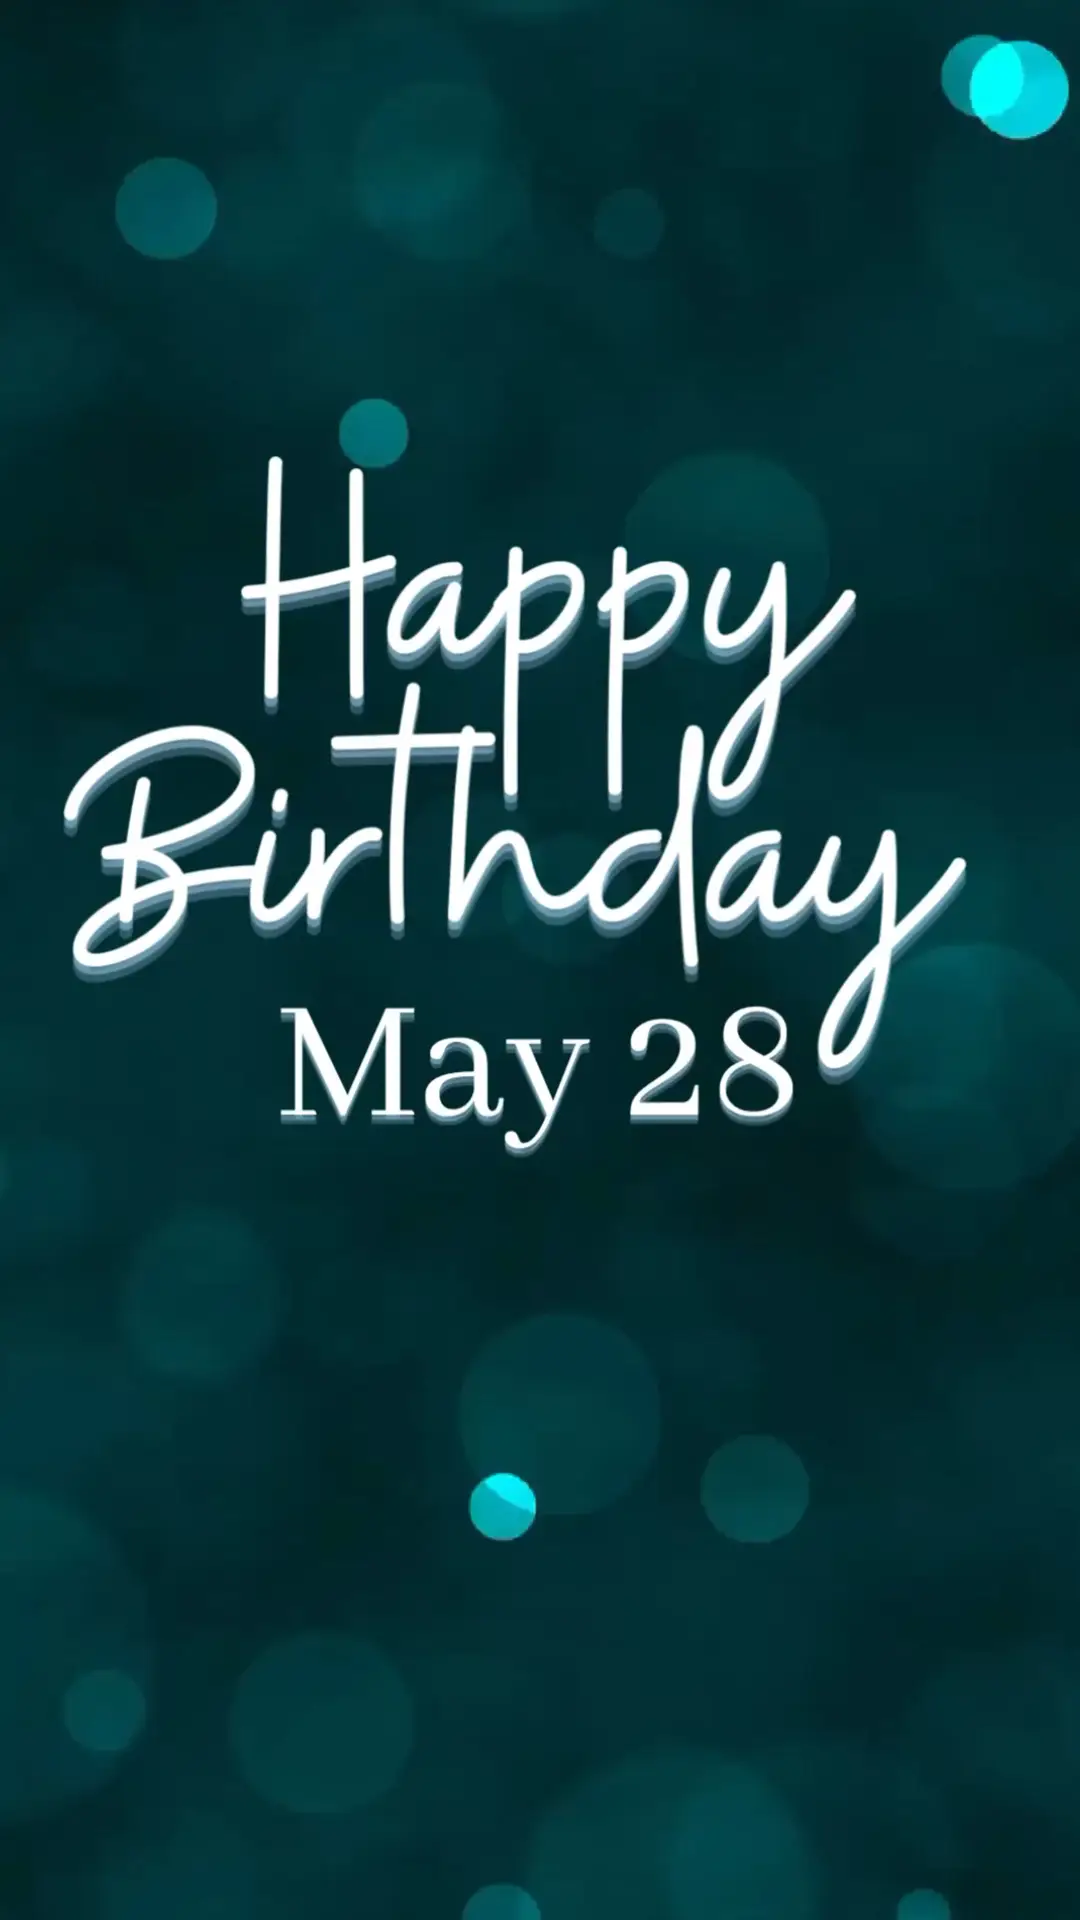 Happy Birthday! May 28